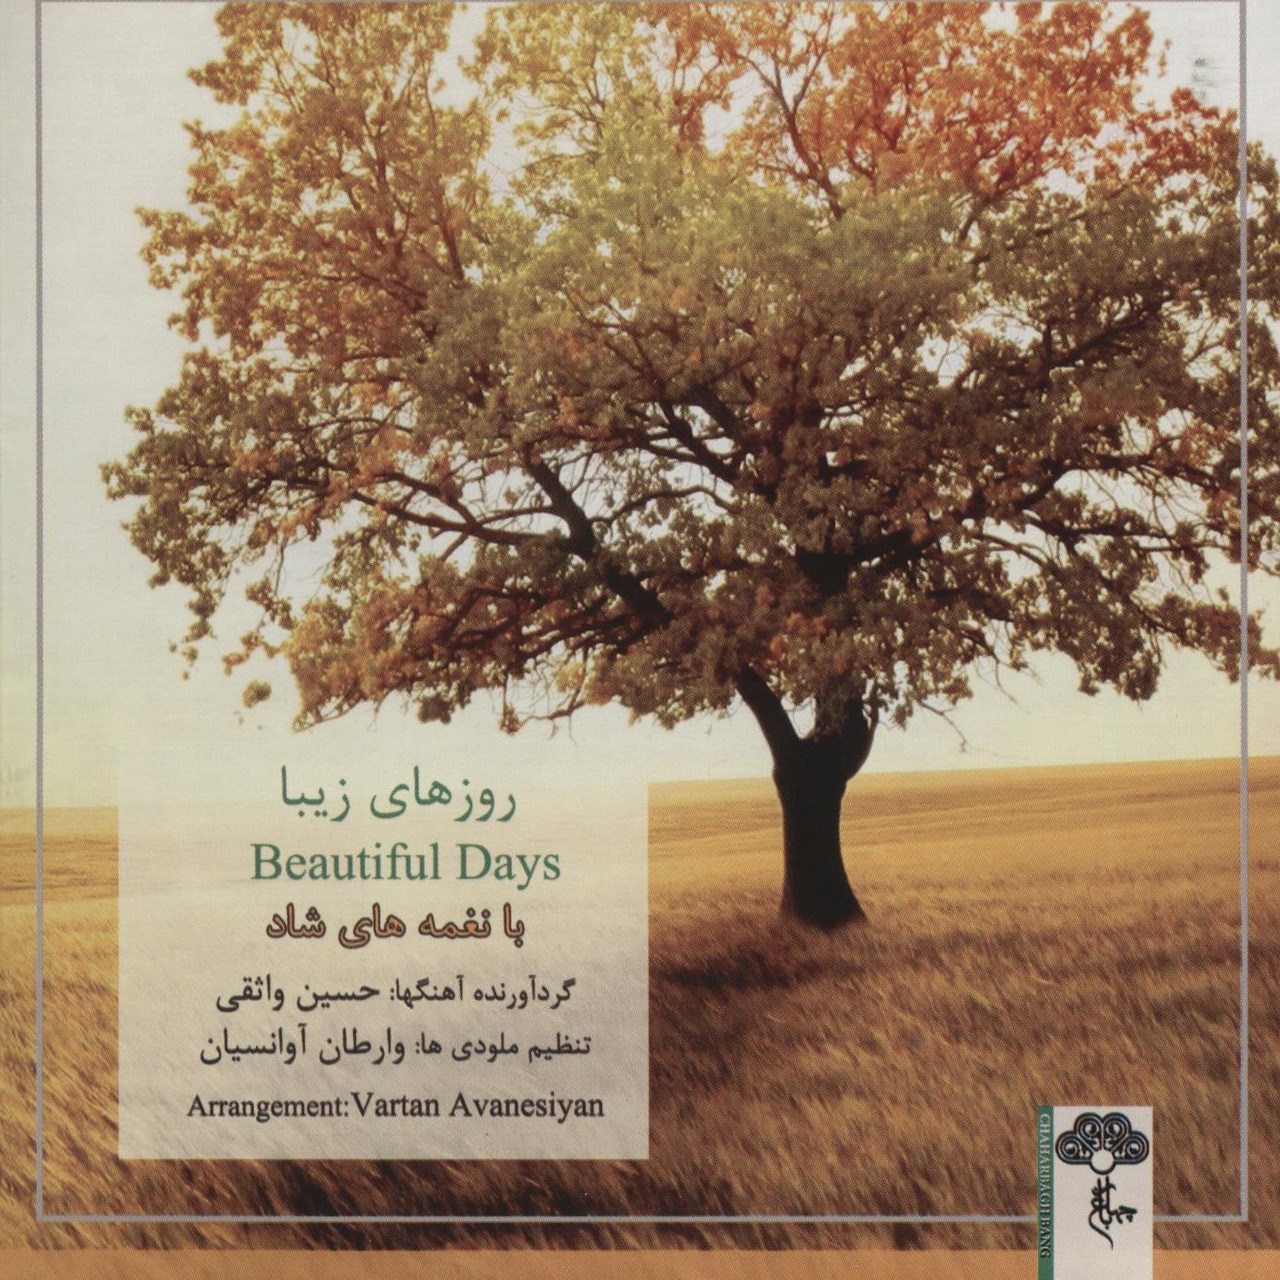 آلبوم موسیقی رزوهای زیبا اثر حسین واثقی